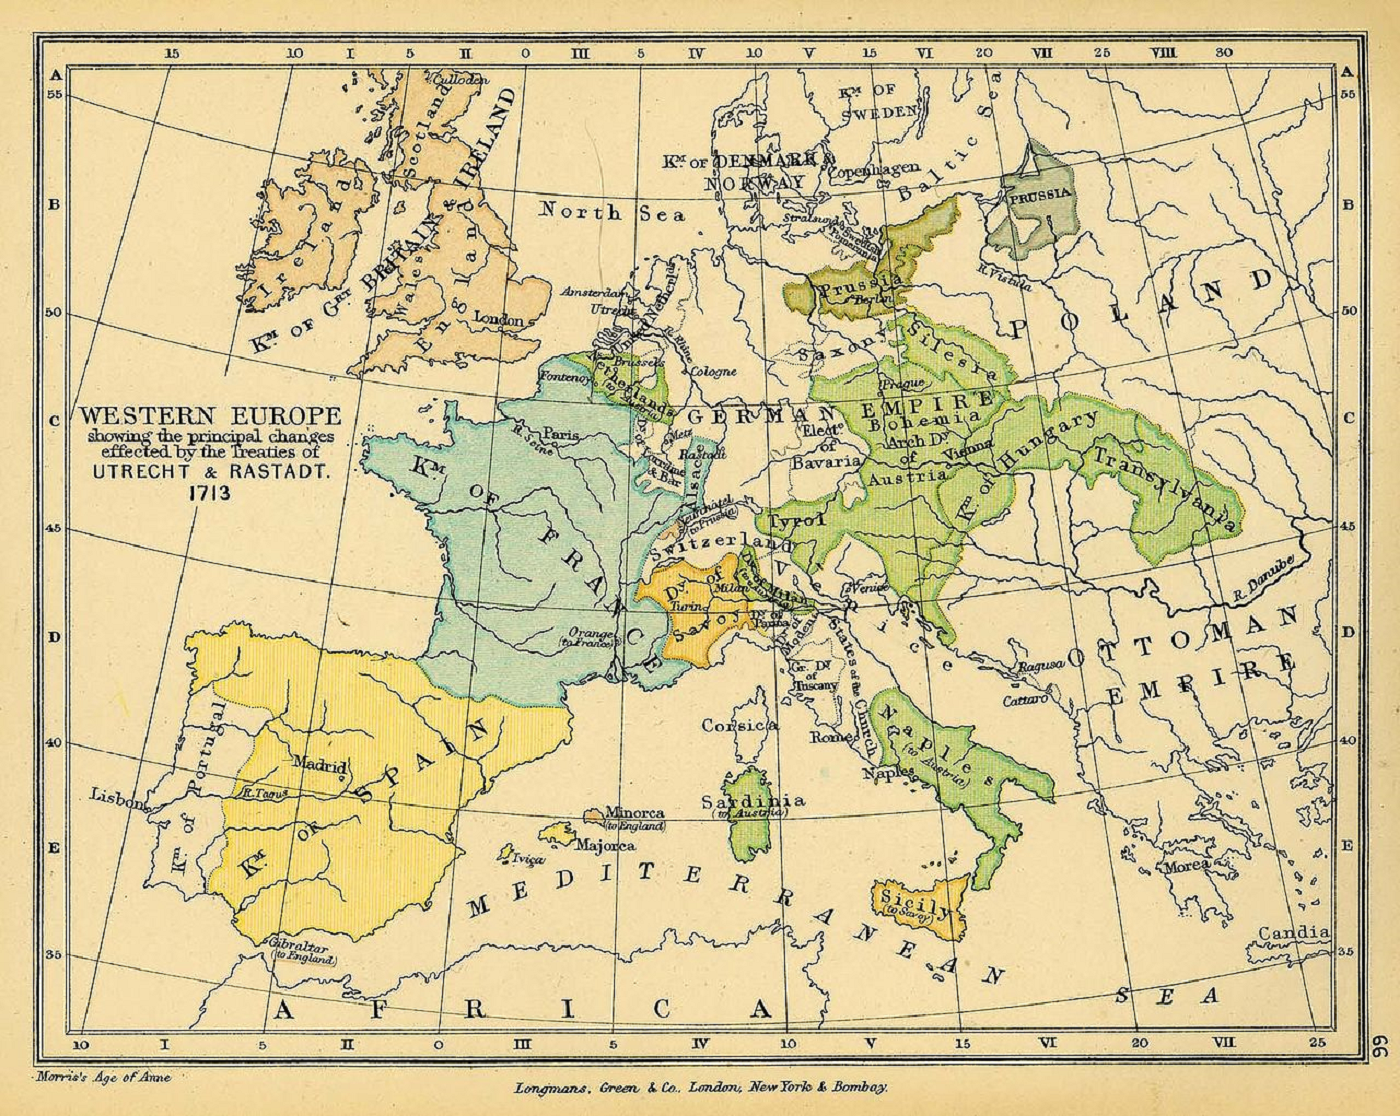 Tractat de Rastatt: Catalunya no aconsegueix passar a l’imperi austríac